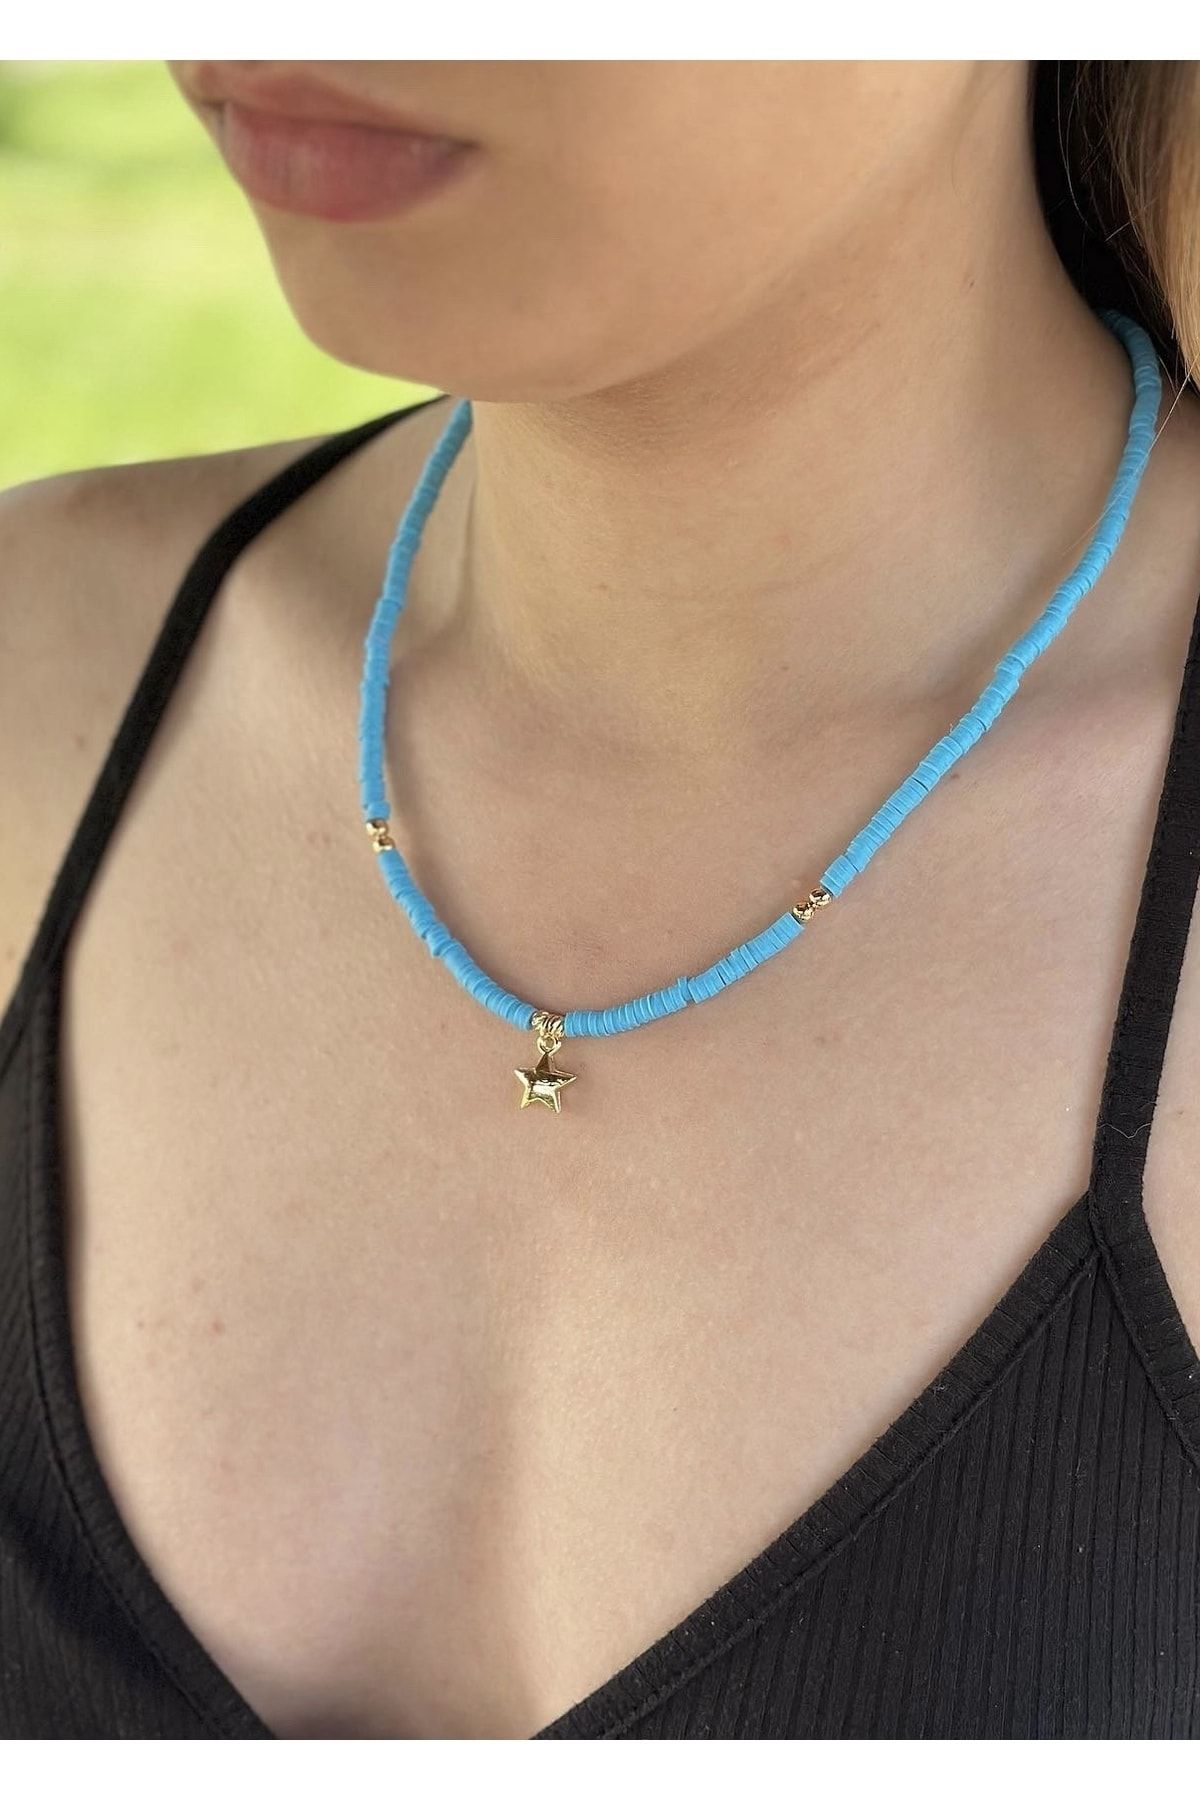 blue gemstone candy necklace - ela rae